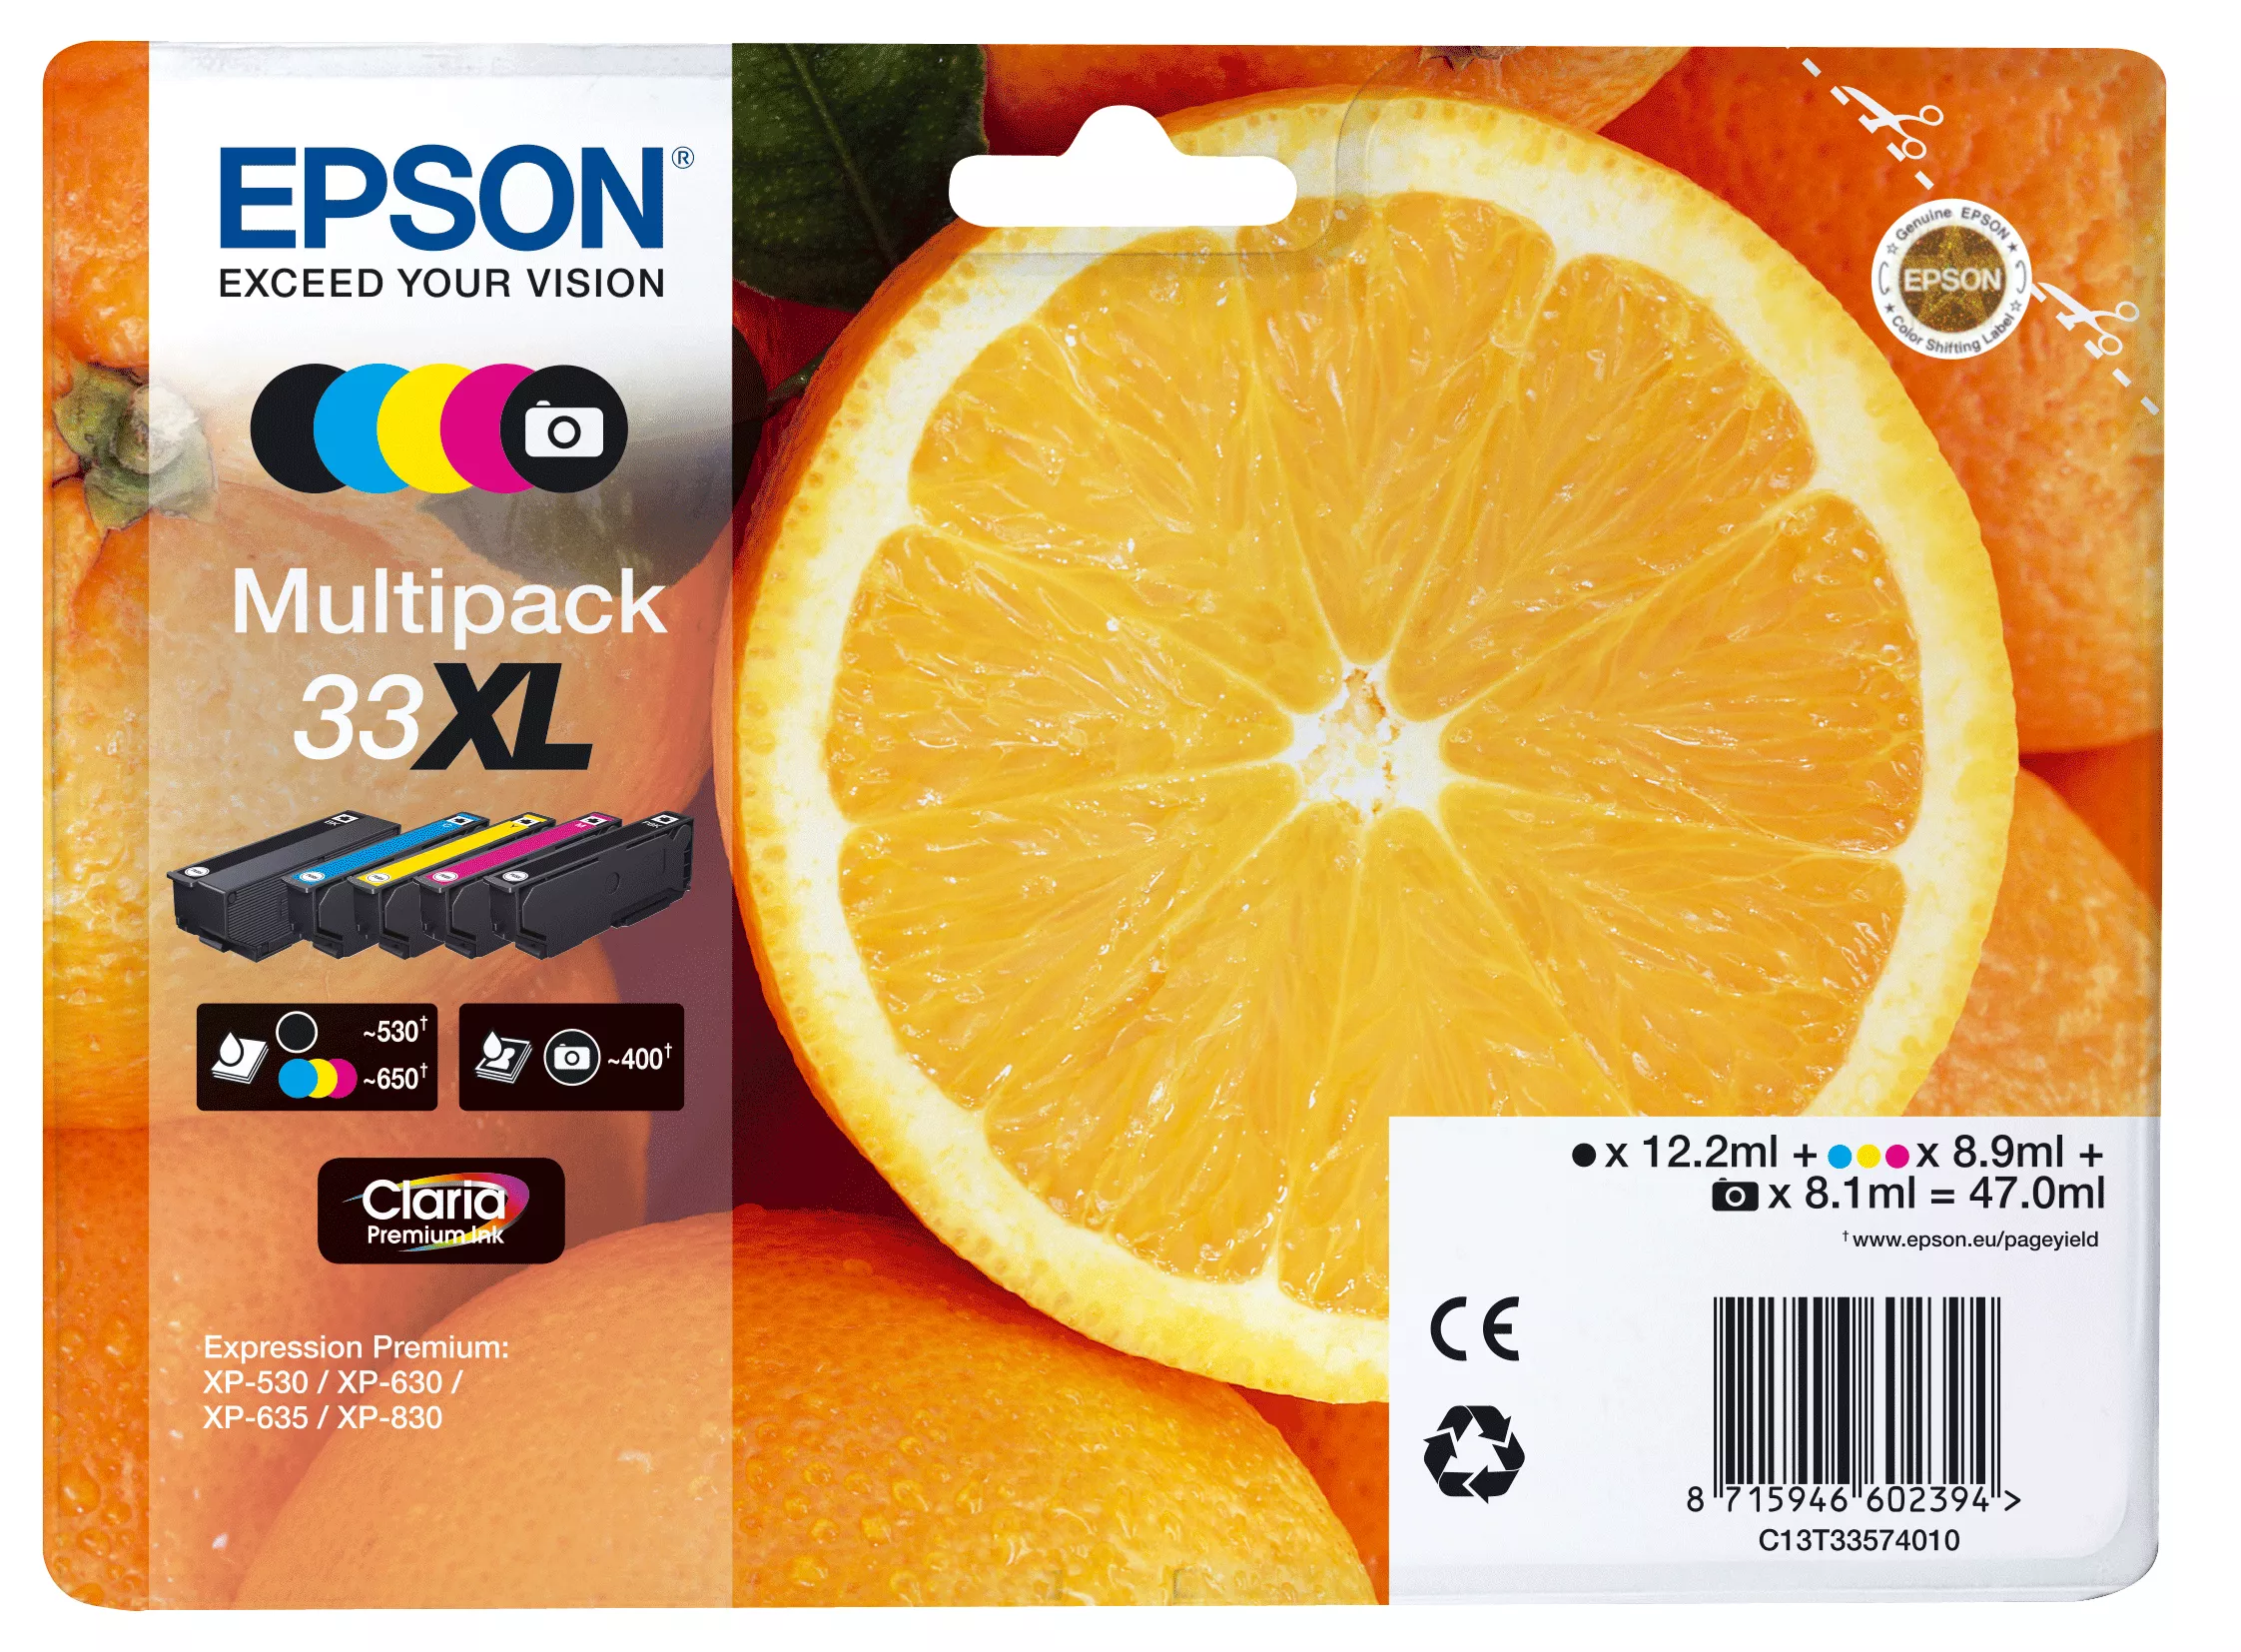 Achat EPSON Multipack Oranges non alarmé - Encre Claria au meilleur prix